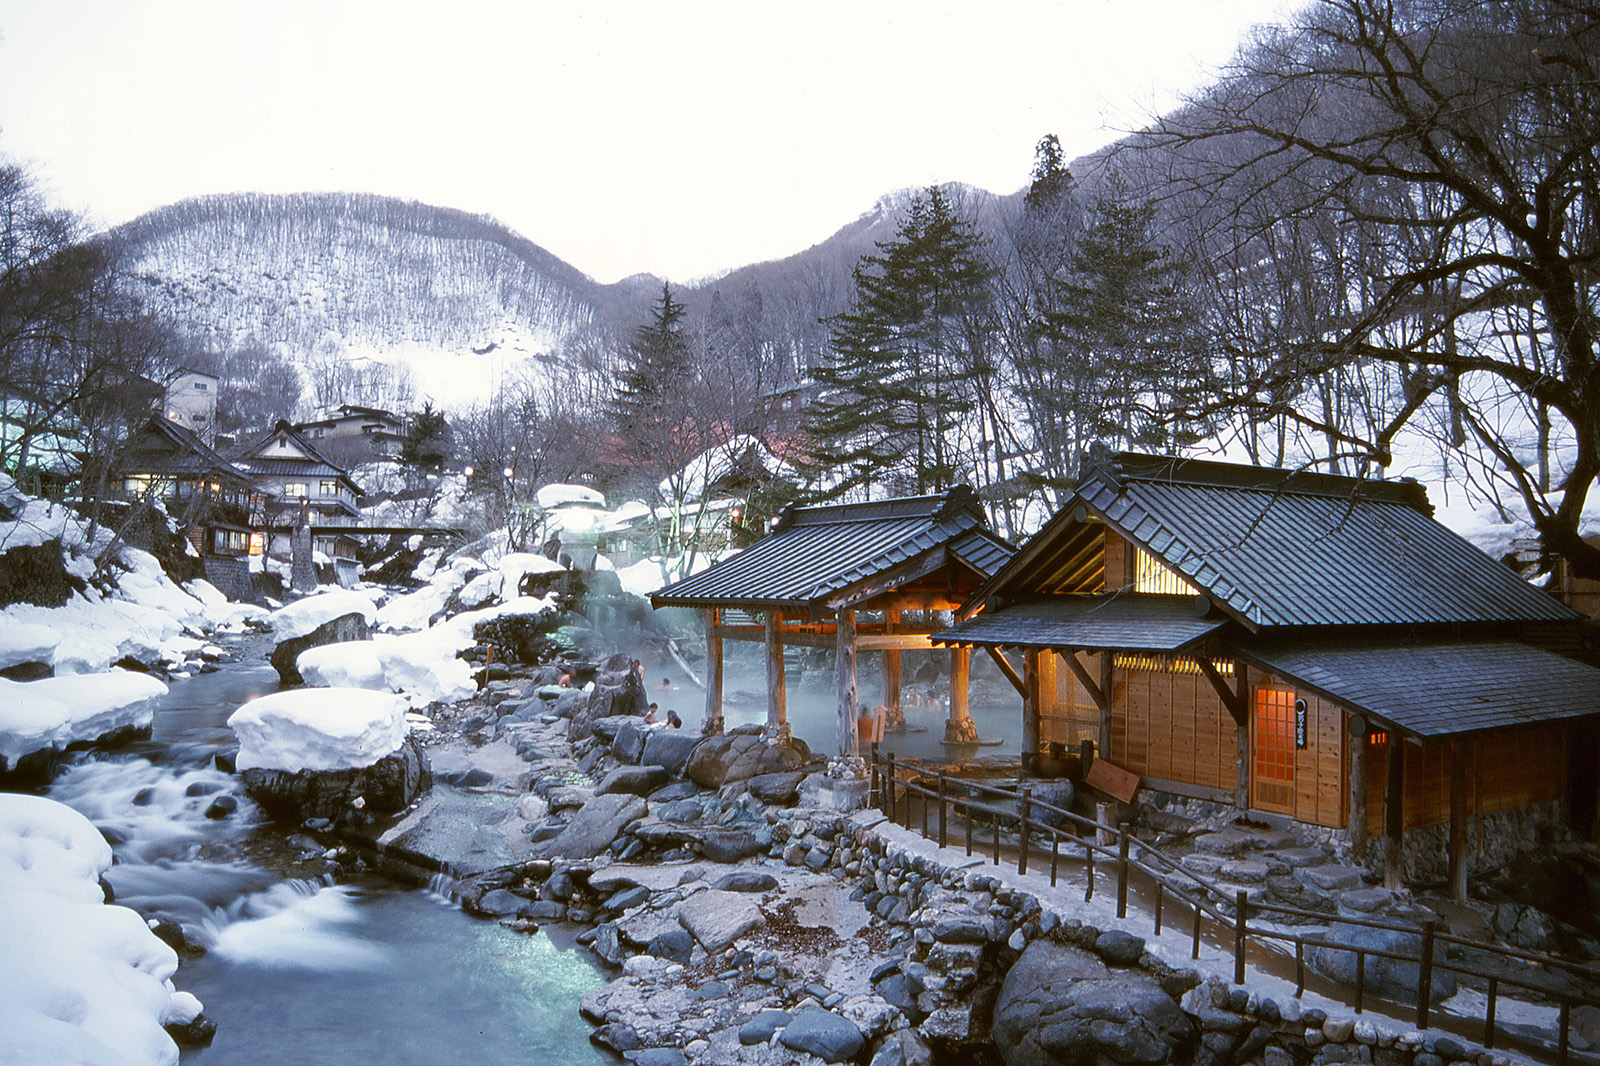 Winter Activities in Asia - Japan